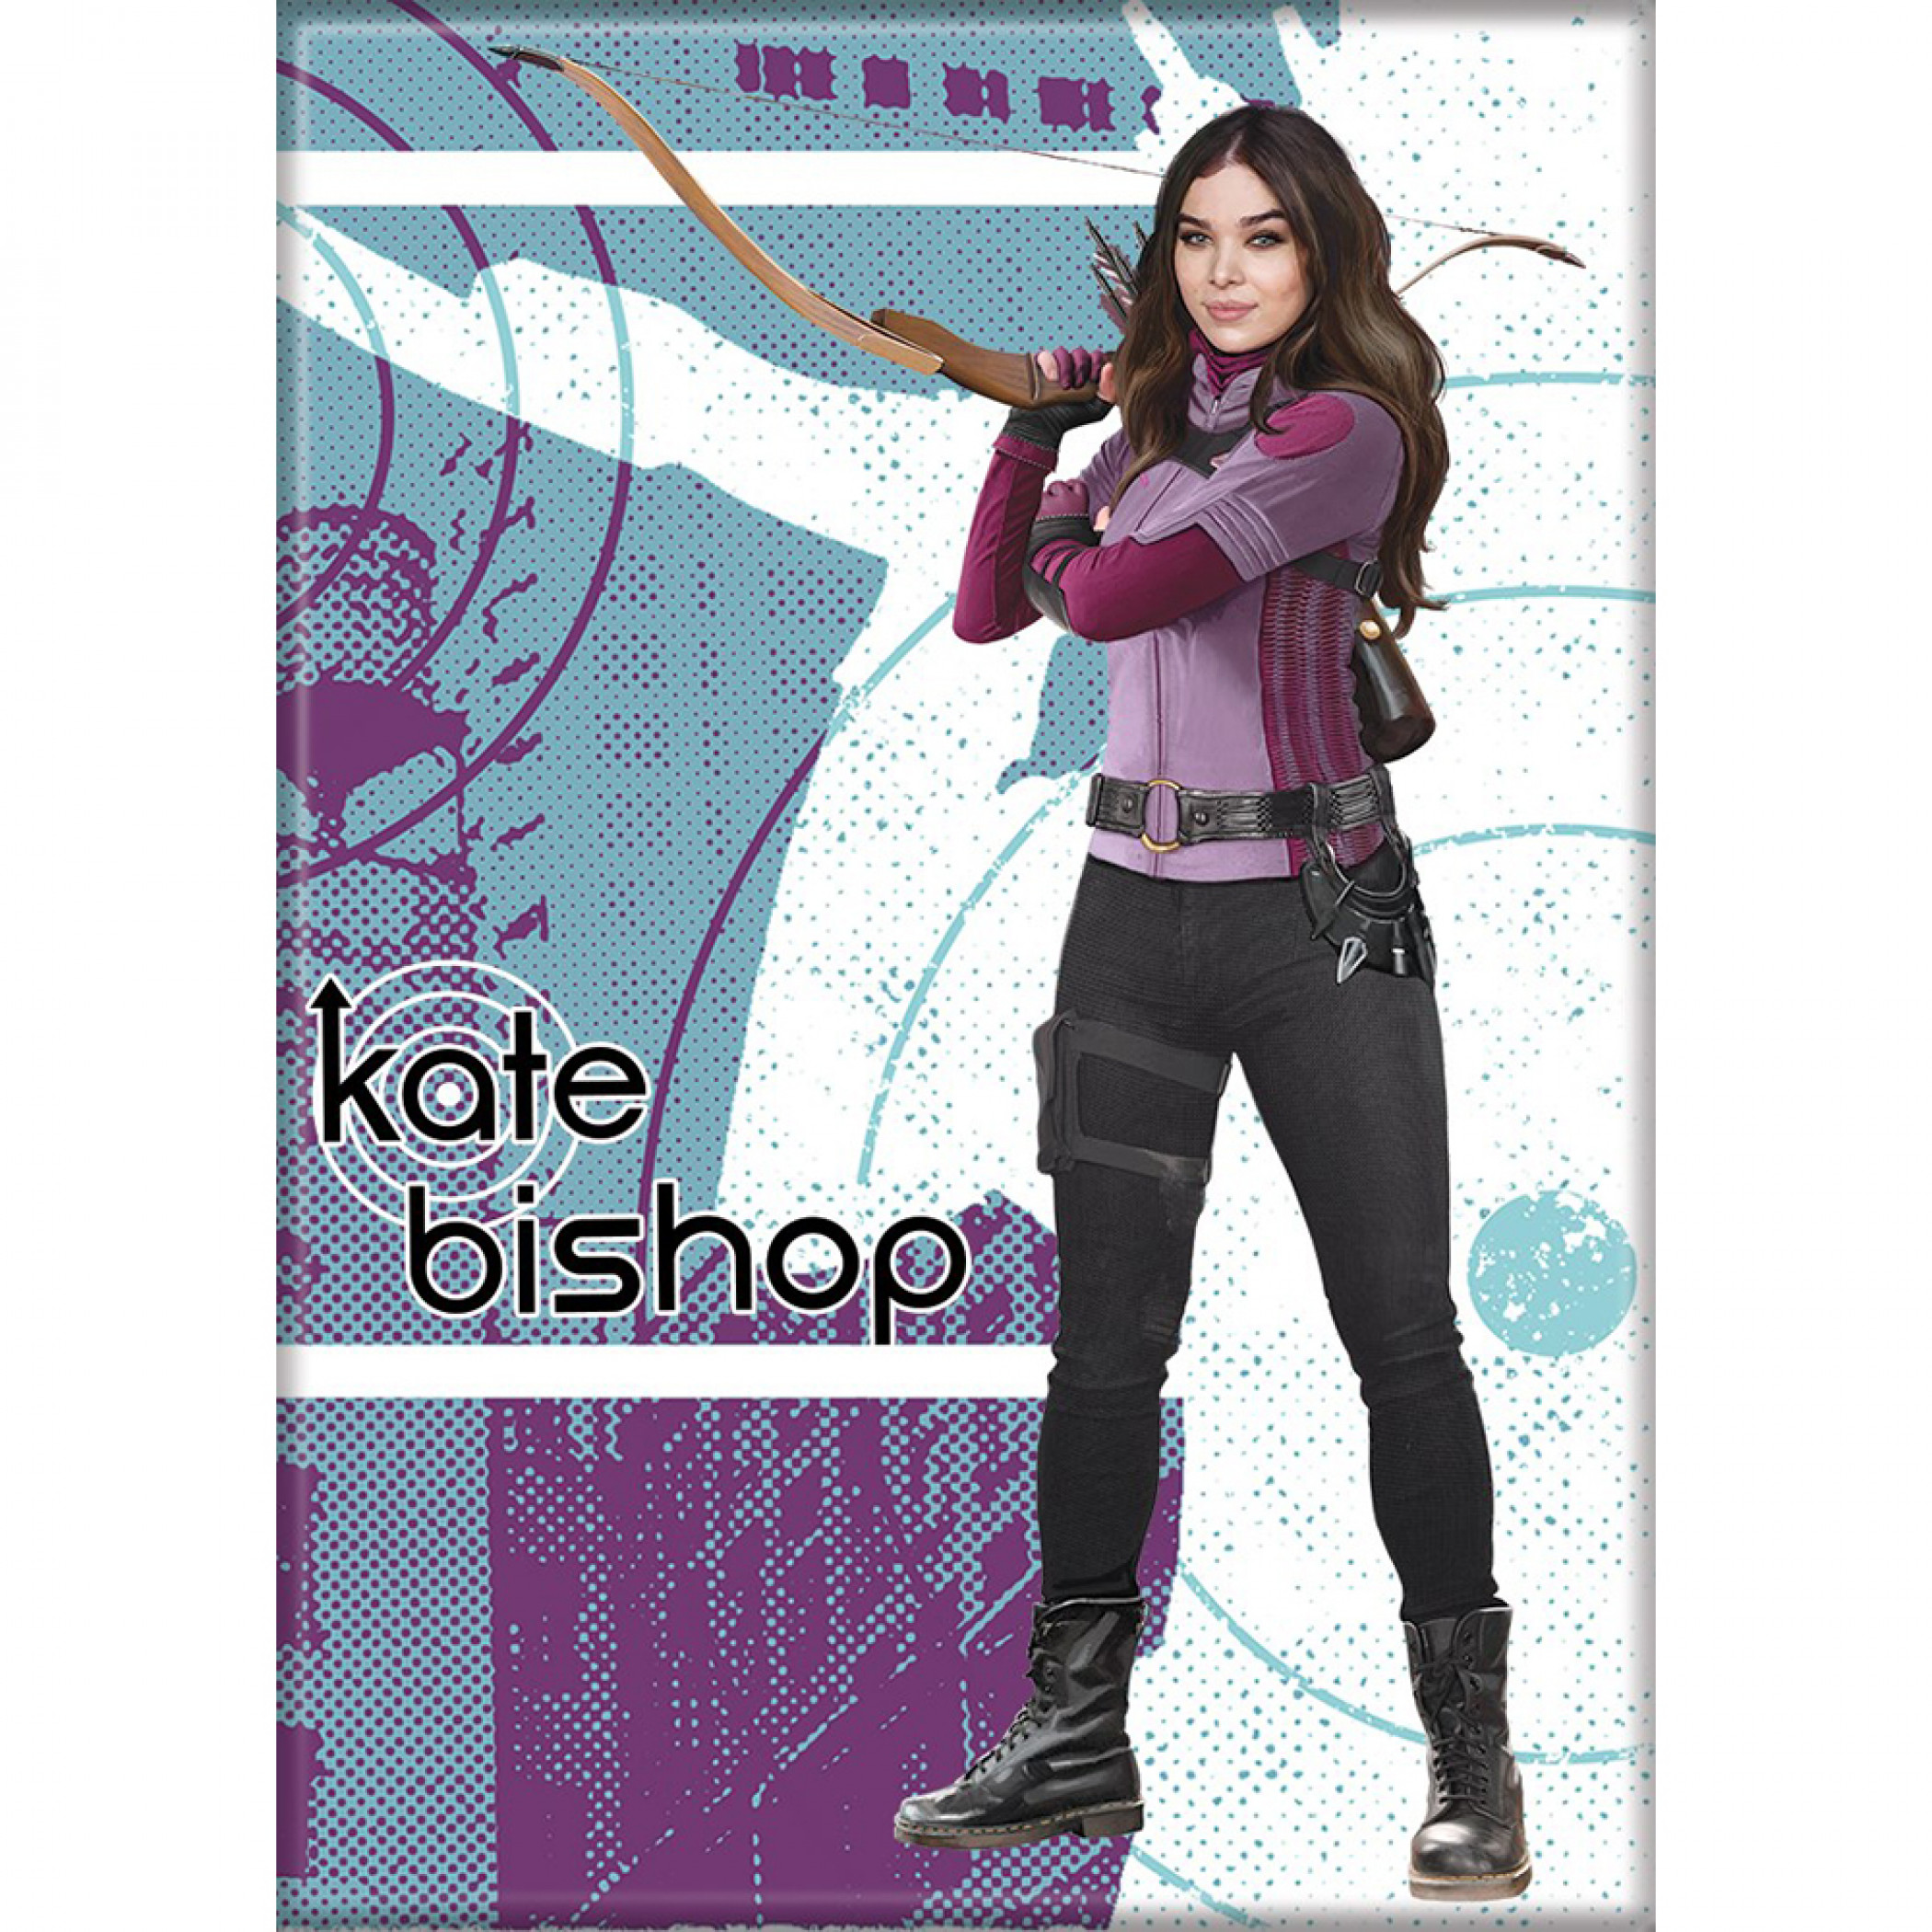 Marvel Studios Hawkeye Series Kate Bishop Character Portrait Magnet